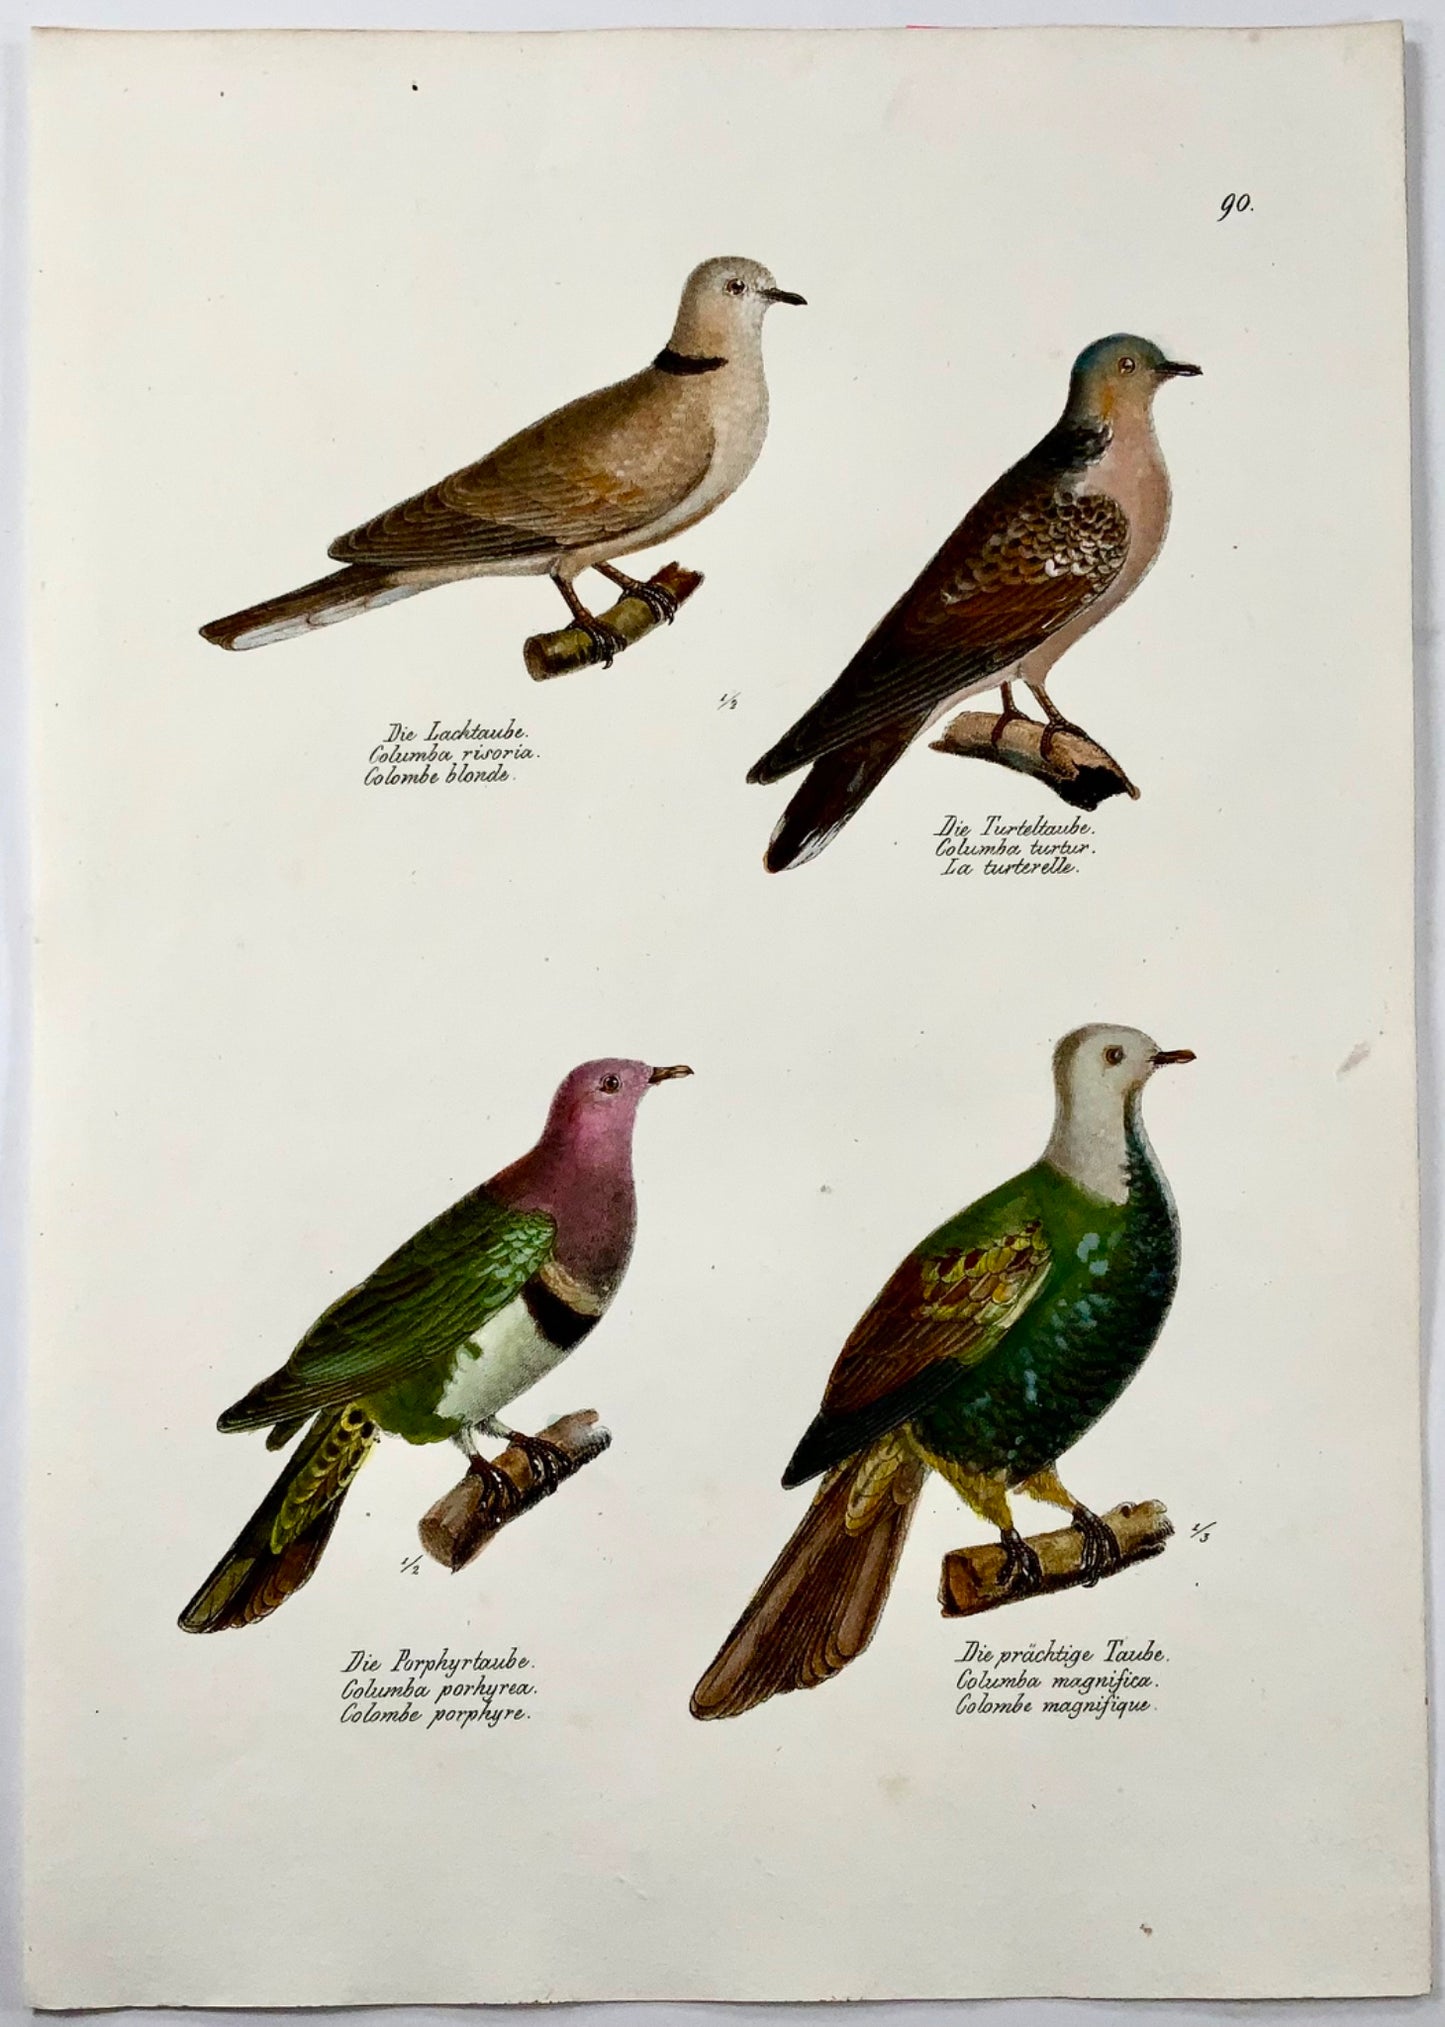 1830 Pigeons, ornithologie, lithographie folio colorée à la main de Brodtmann